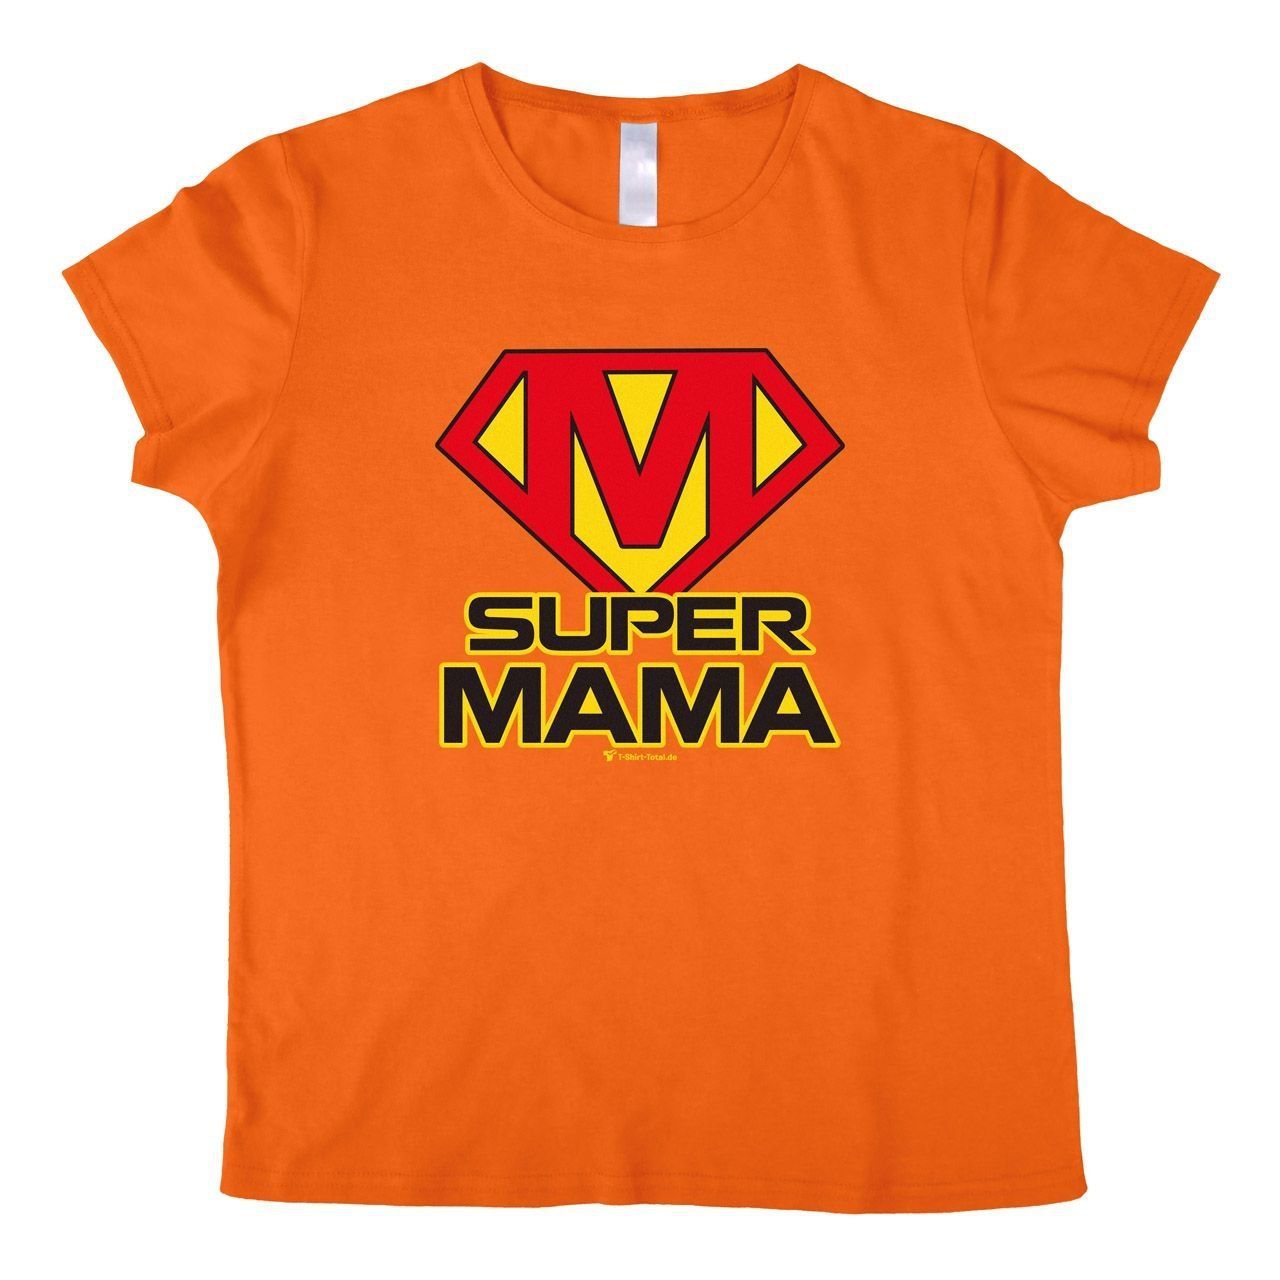 Super Mama Woman T-Shirt orange 2-Extra Large